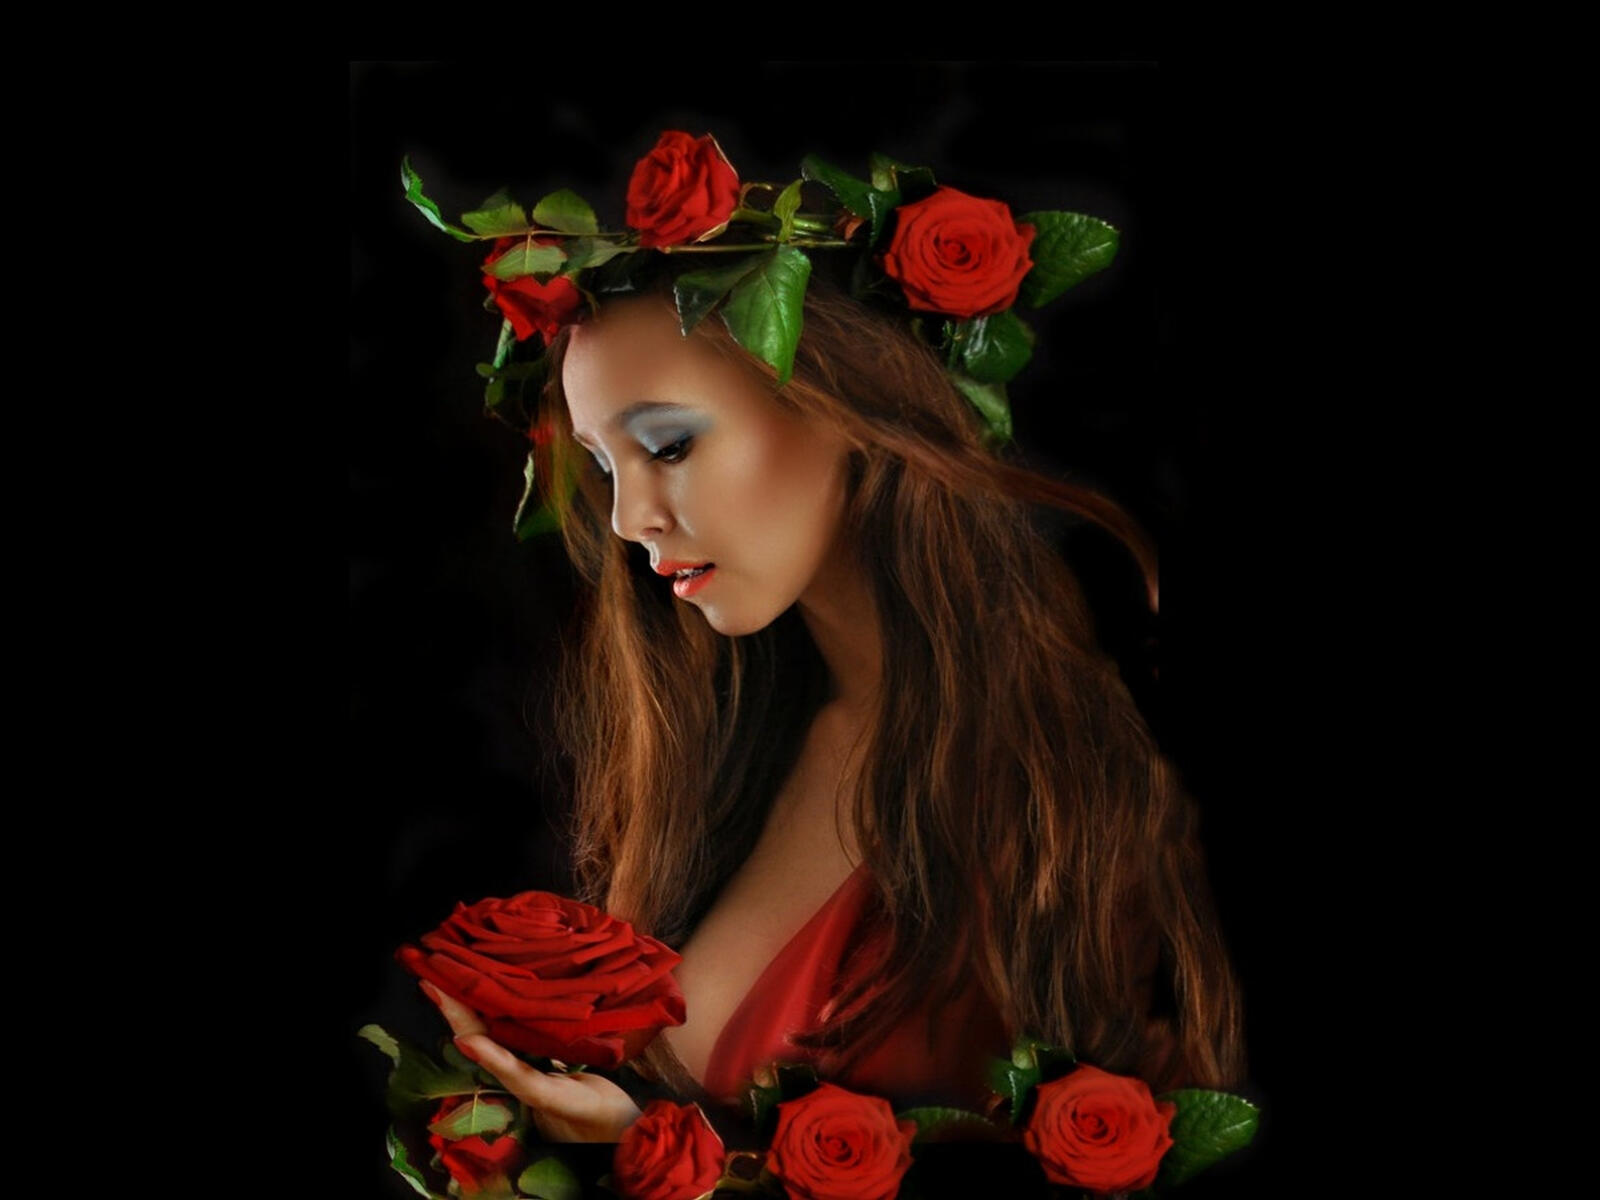 Бесплатное фото Темноволосая девушка с венком из цветов на голове